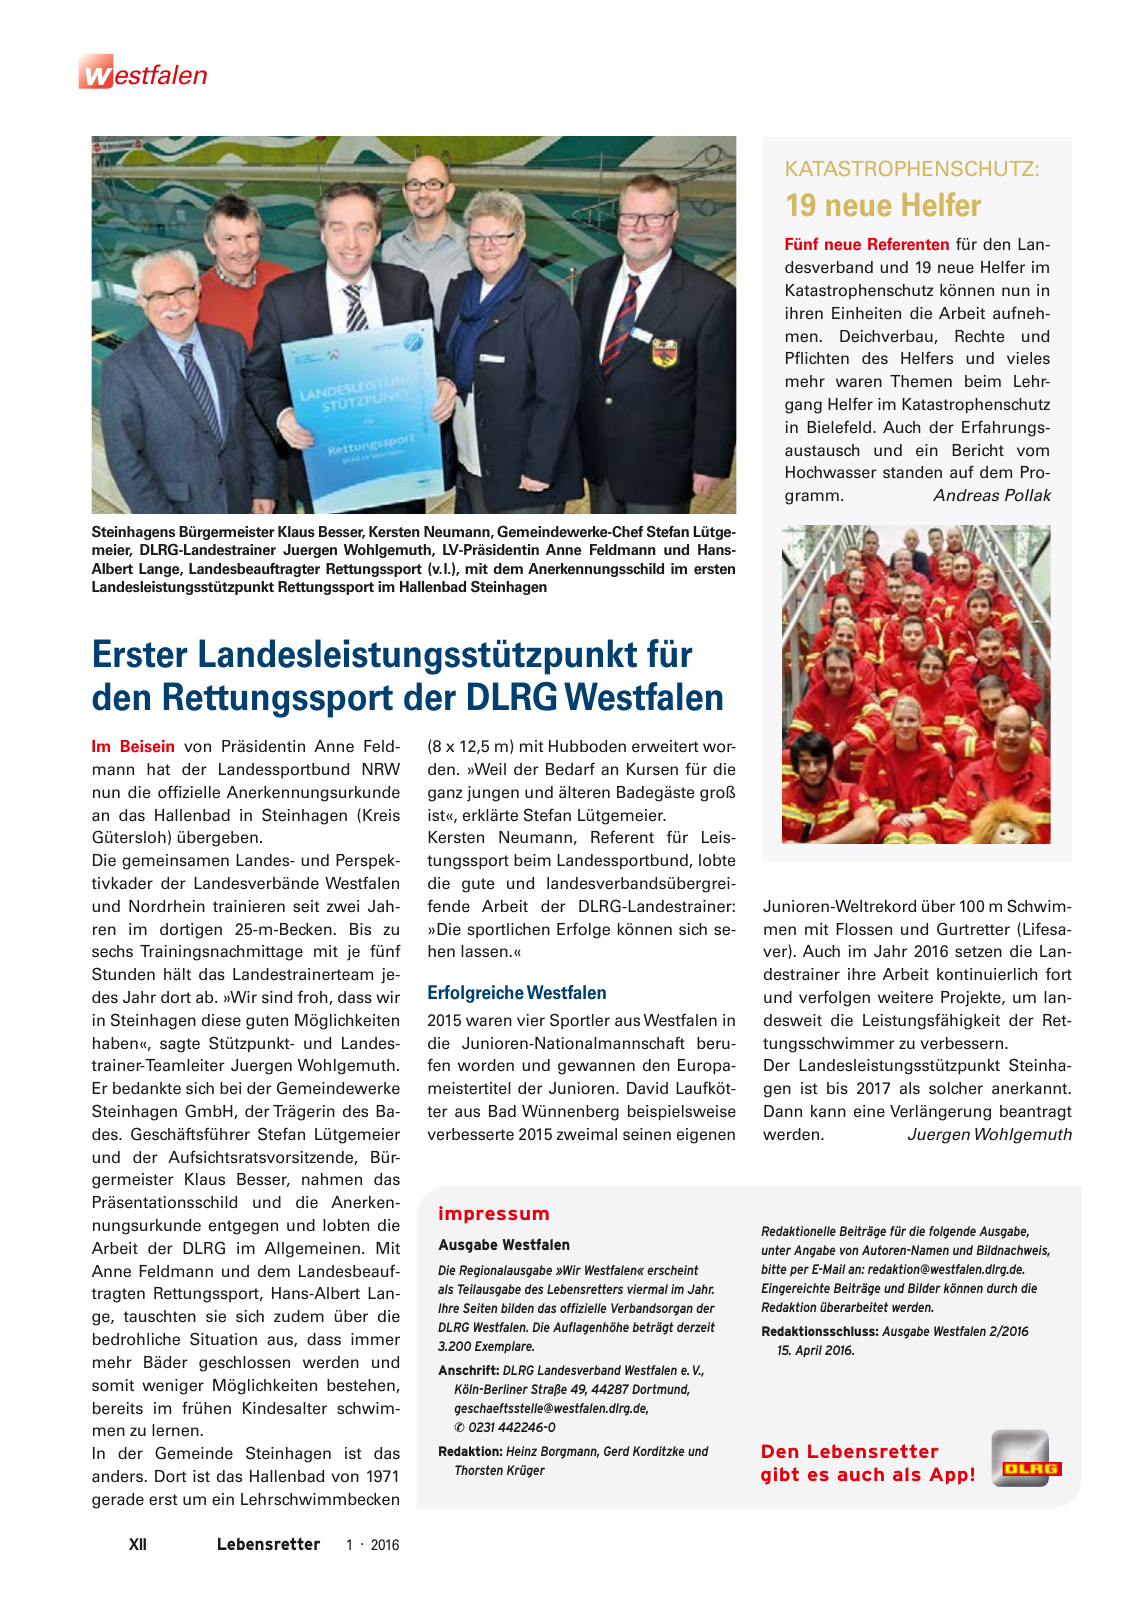 Vorschau Lebensretter 1/2016 - Regionalausgabe Westfalen Seite 14